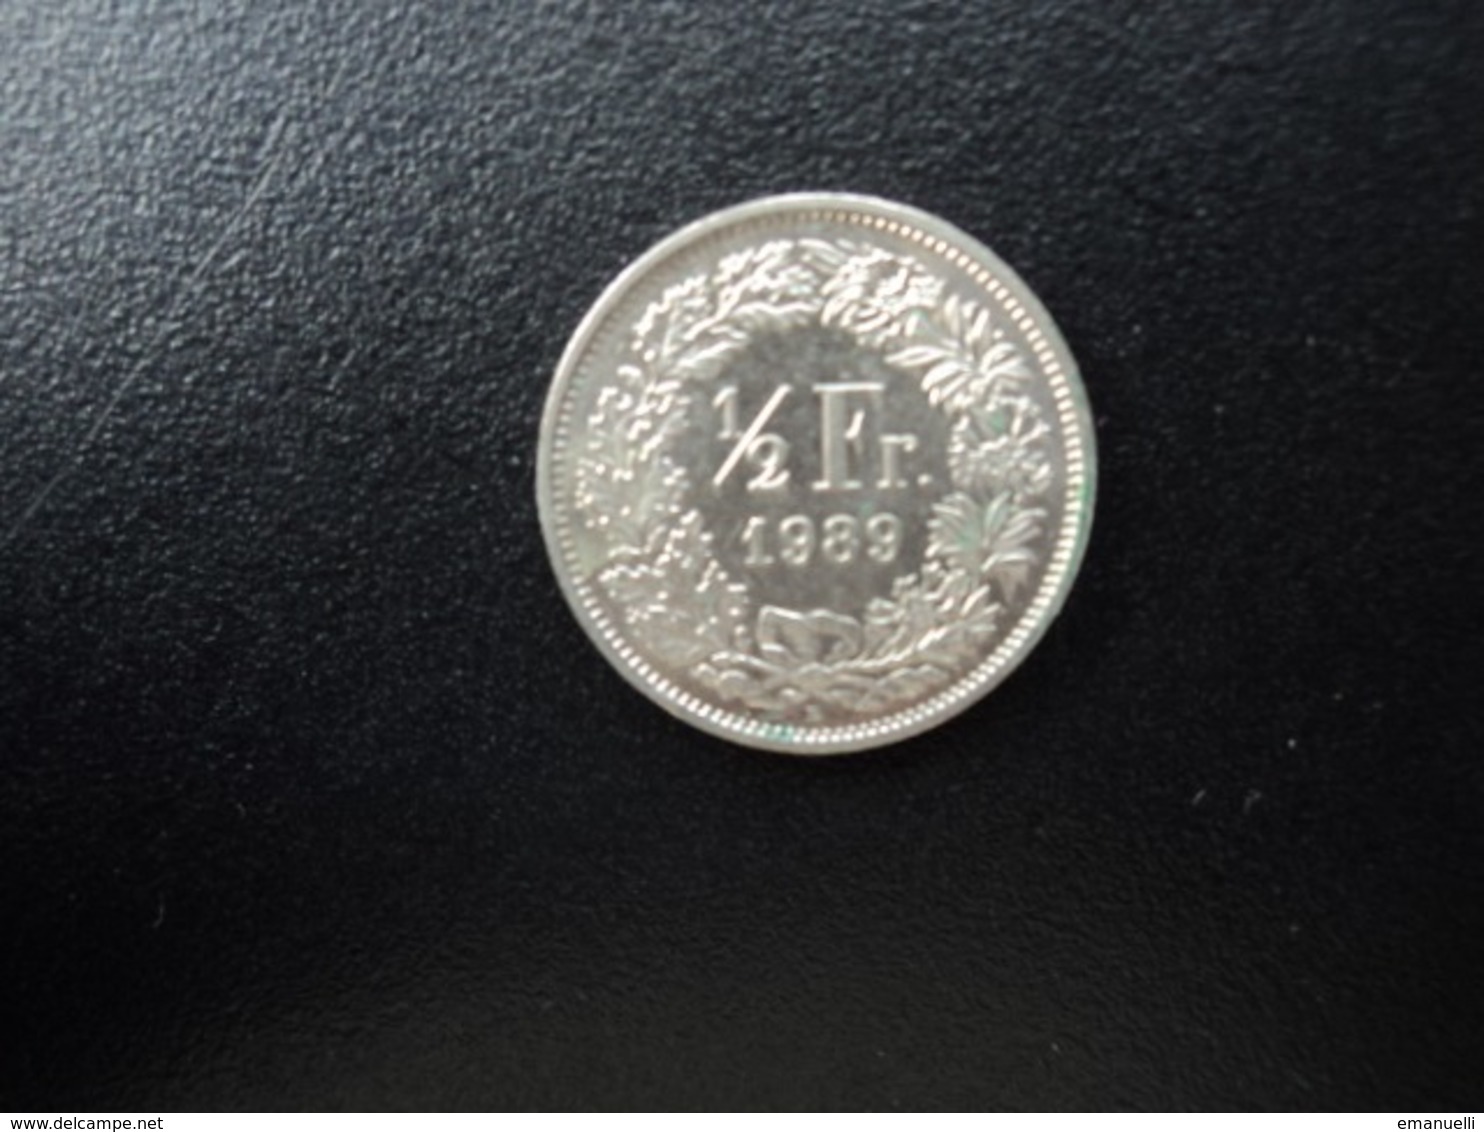 SUISSE : 1/2 FRANC   1989 B     KM 23a.1        SUP+ - 1/2 Franc